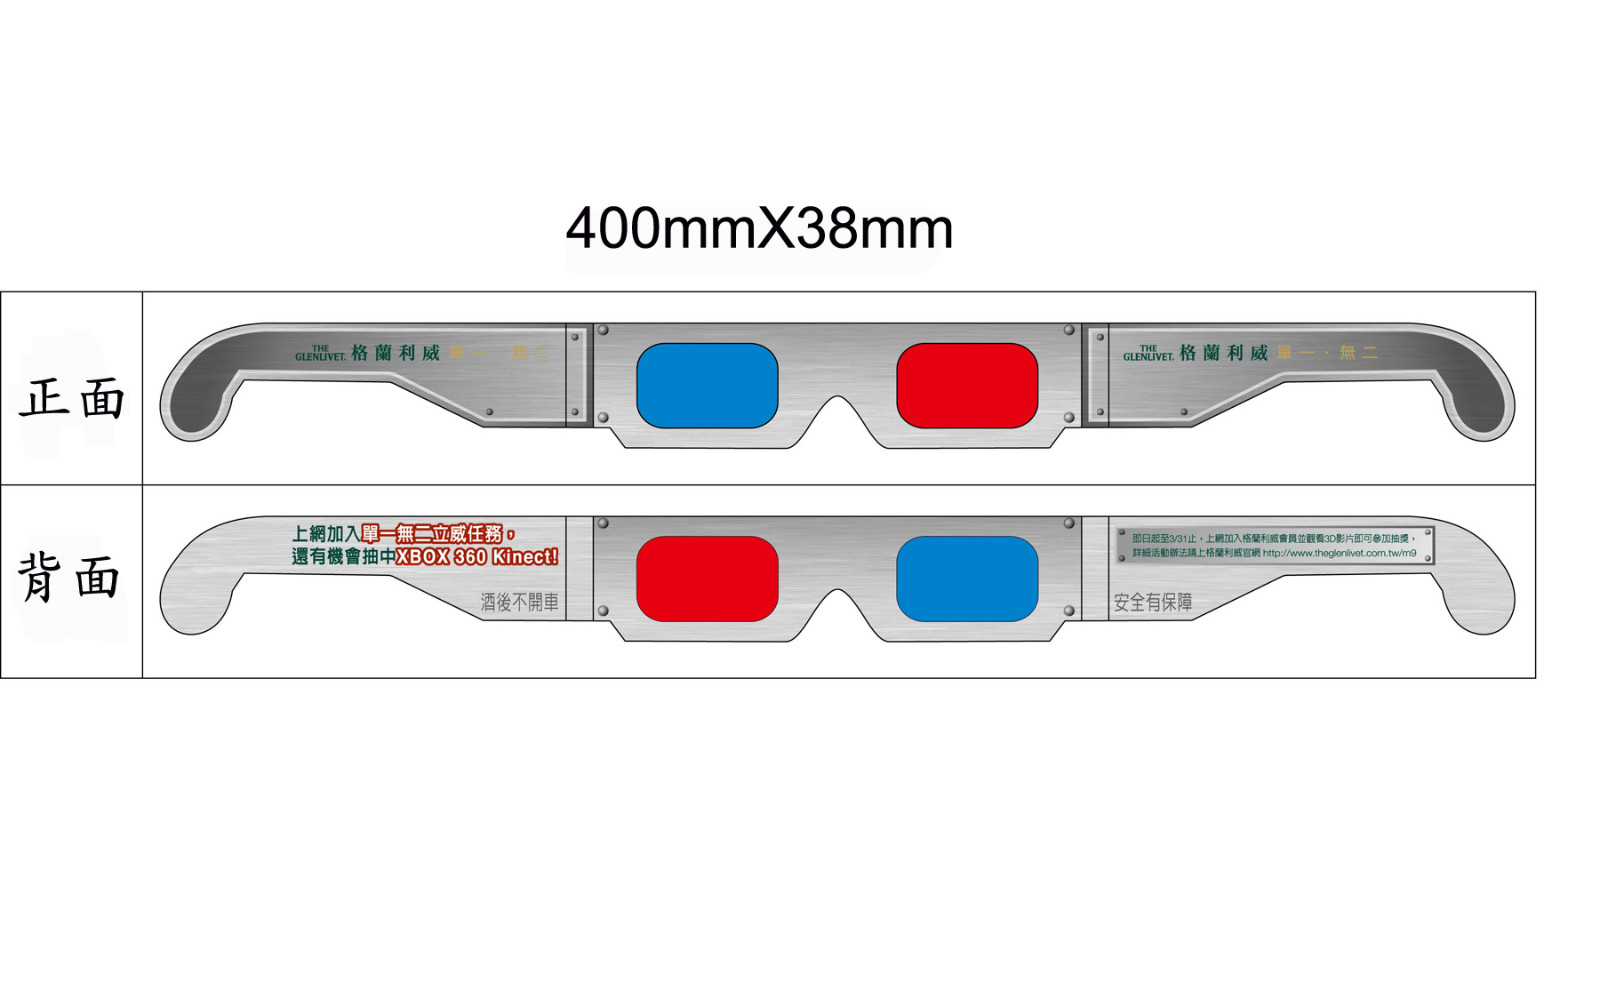 3D紅藍紙眼鏡 3D眼鏡 3D立體眼鏡